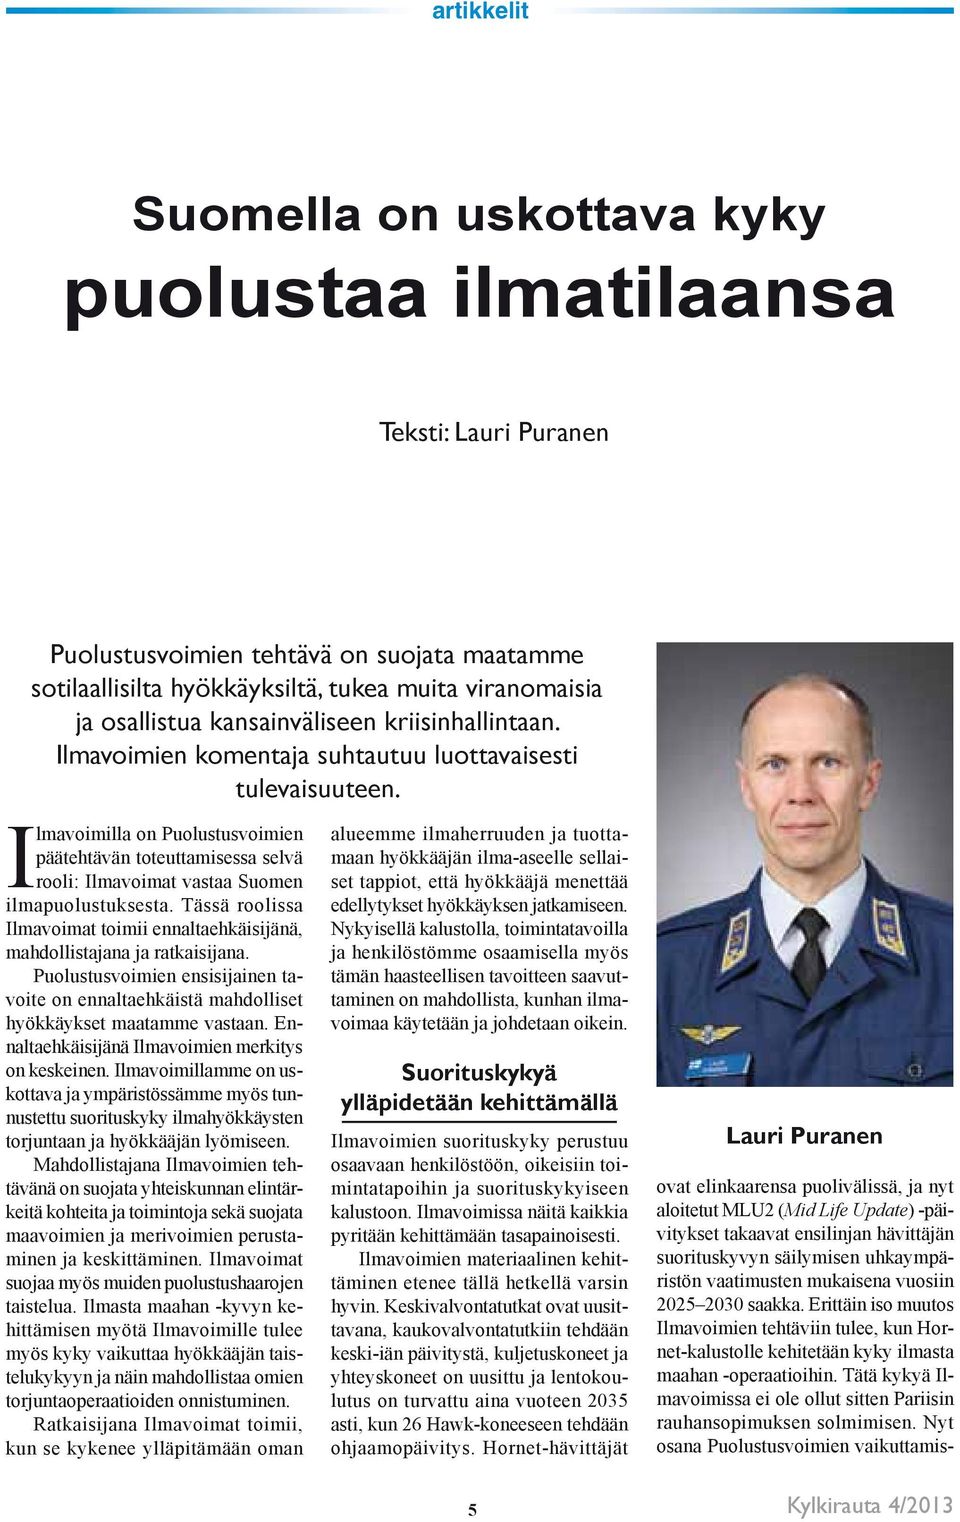 Ilmavoimilla on Puolustusvoimien päätehtävän toteuttamisessa selvä rooli: Ilmavoimat vastaa Suomen ilmapuolustuksesta.